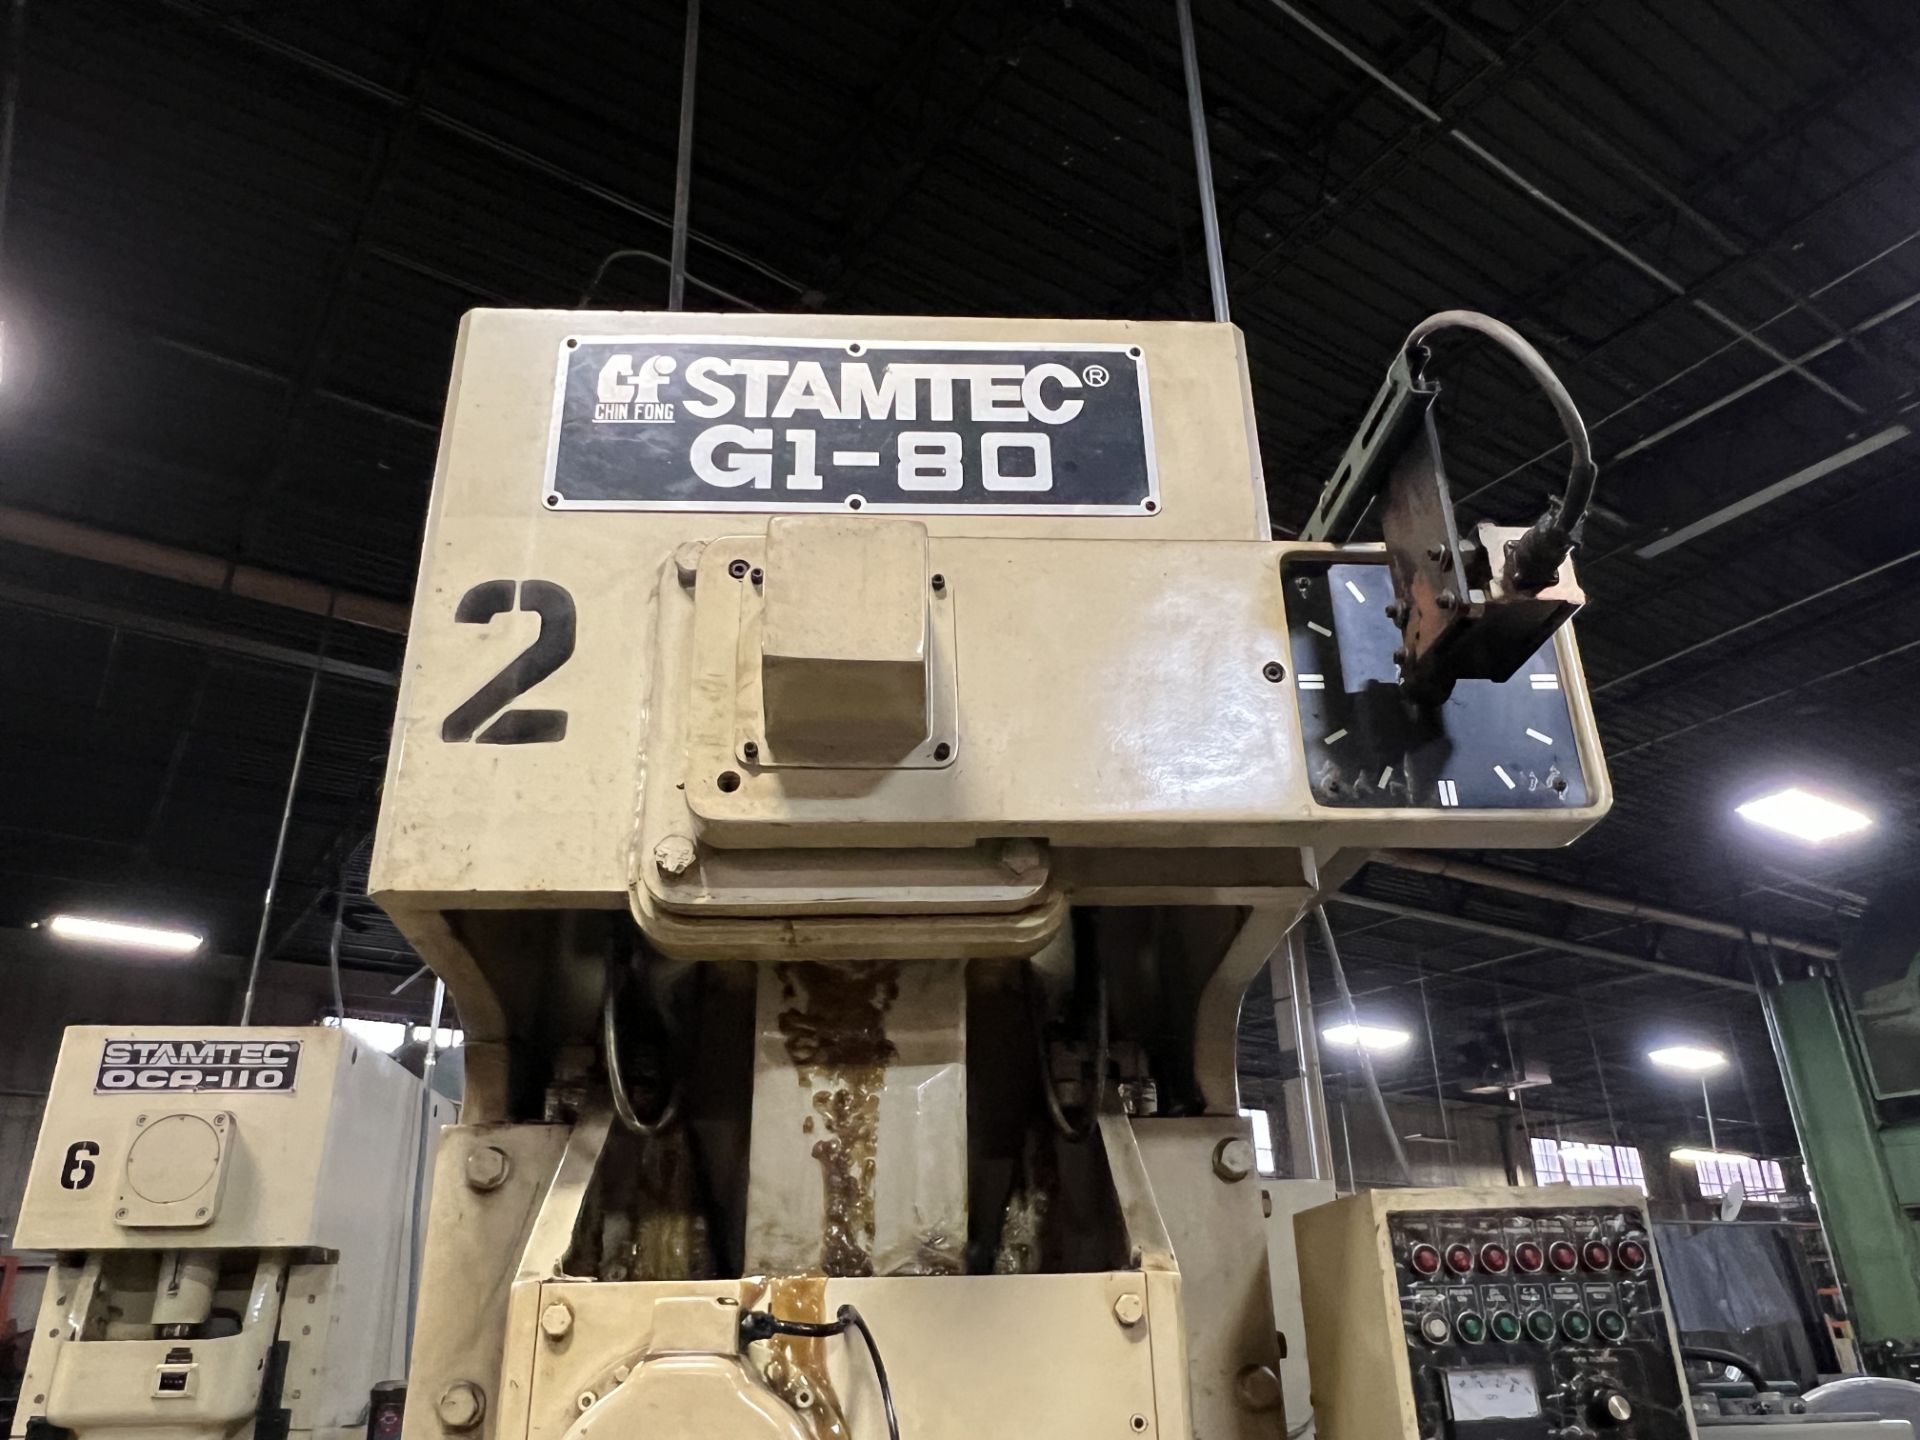 Stamtec G1-80 80-Ton Gap Frame Press, S/N 591025 - Image 8 of 12